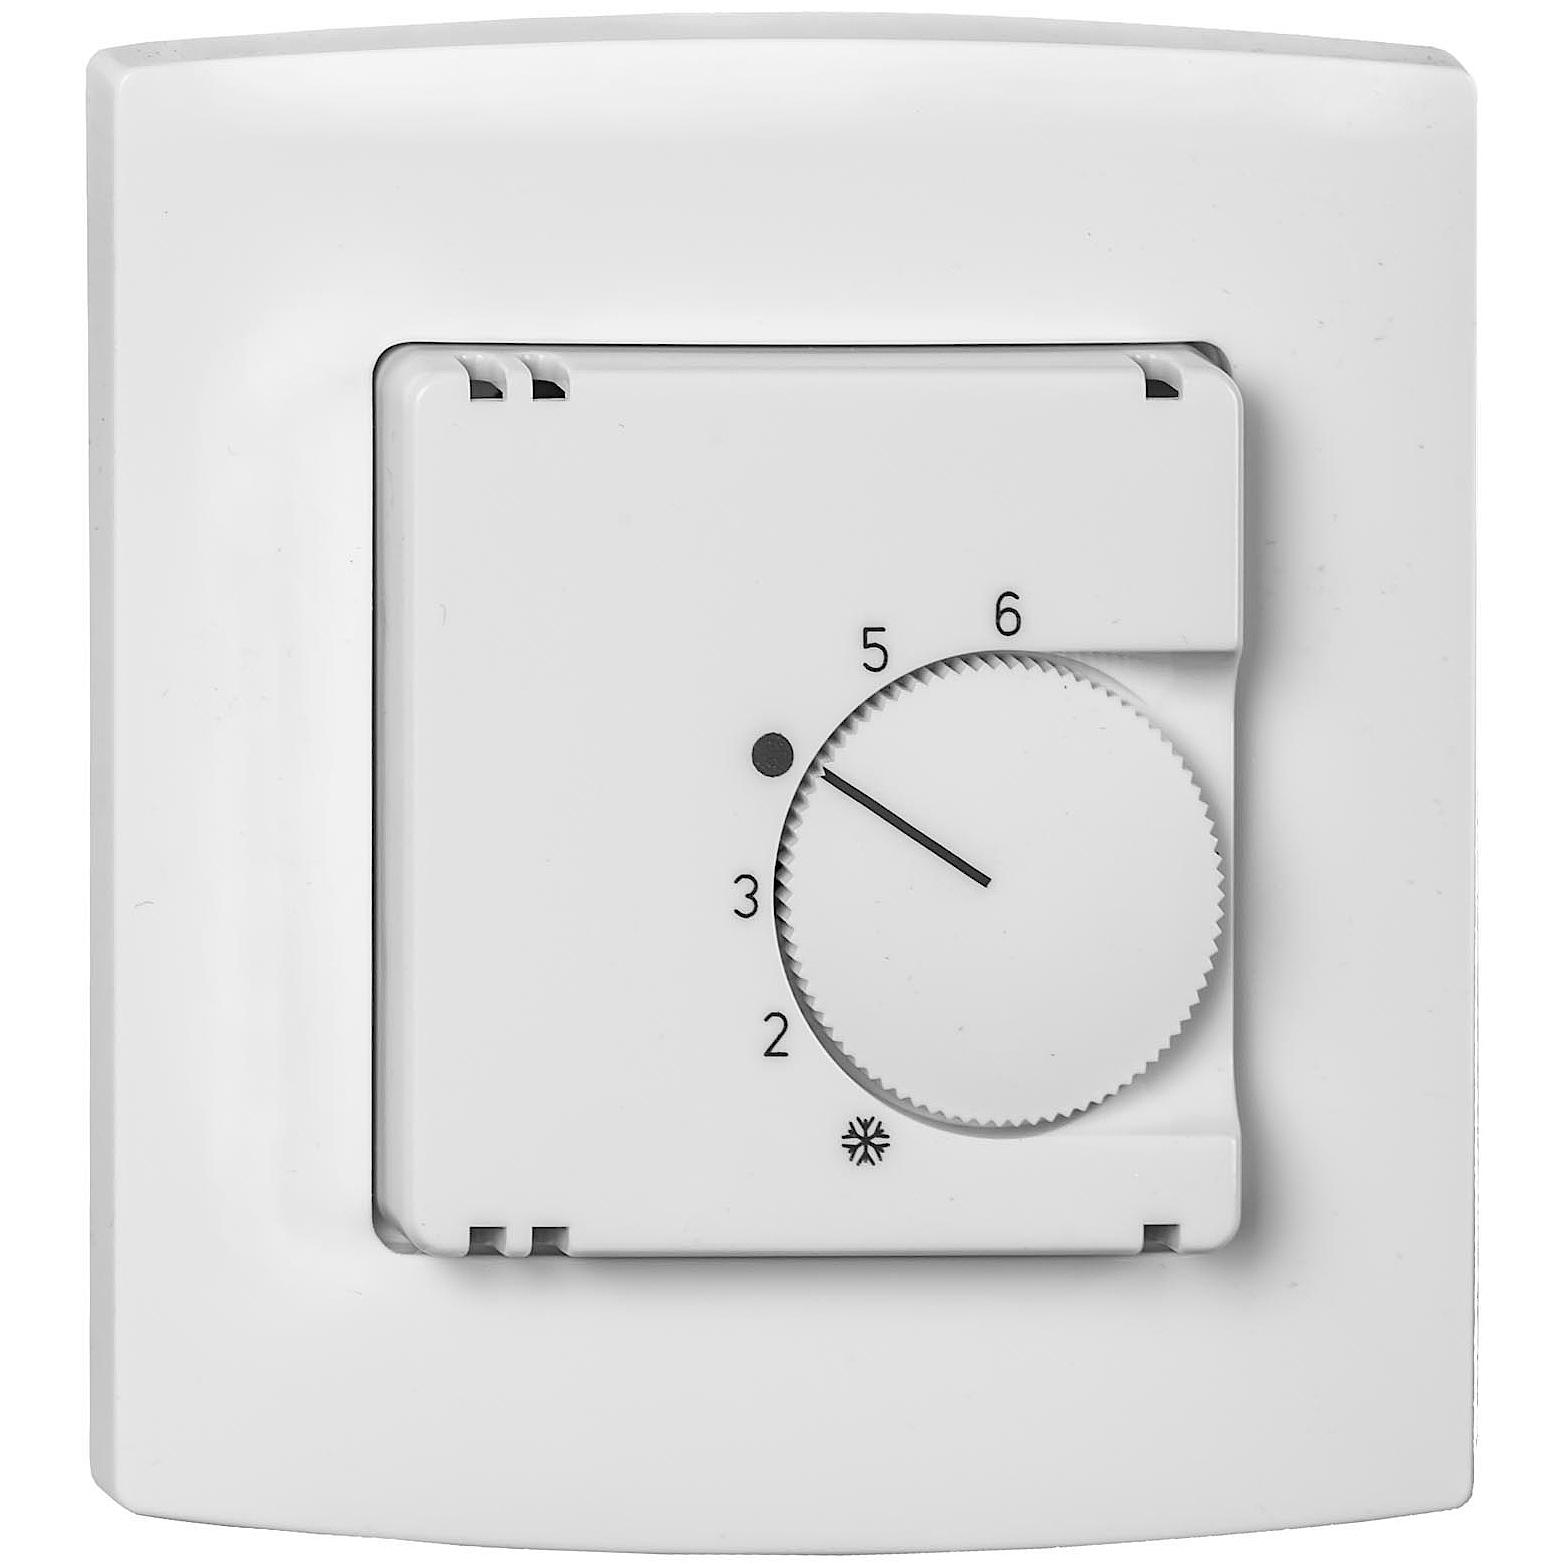 Регулювання x-net Standard: настінний вбудований термостат 230 В.